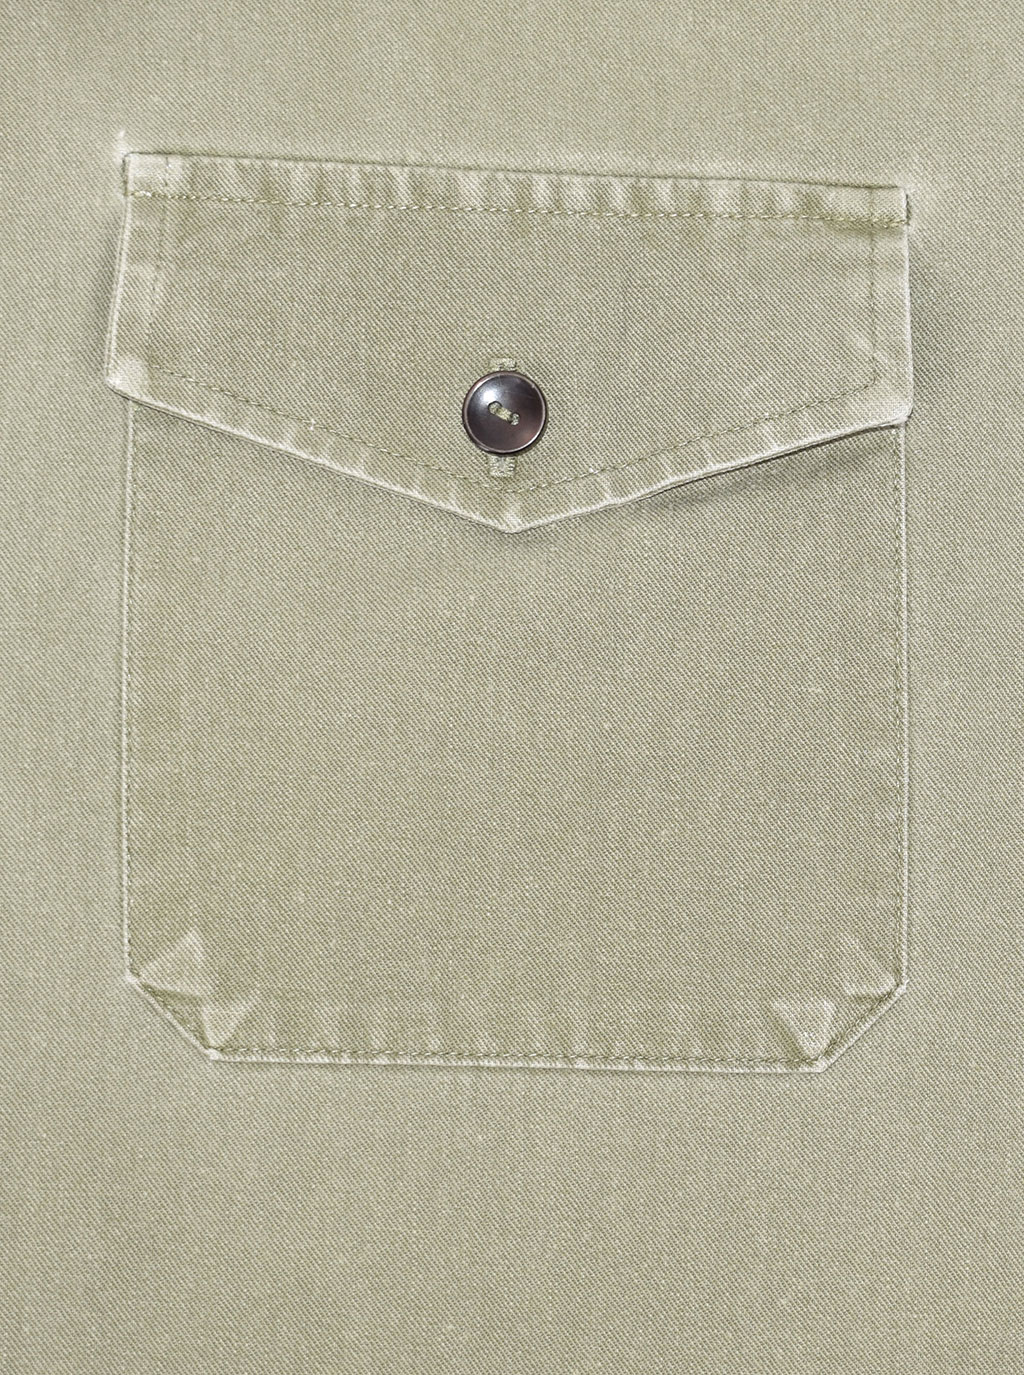 Рубашка старого образца короткие рукава olive б/у США